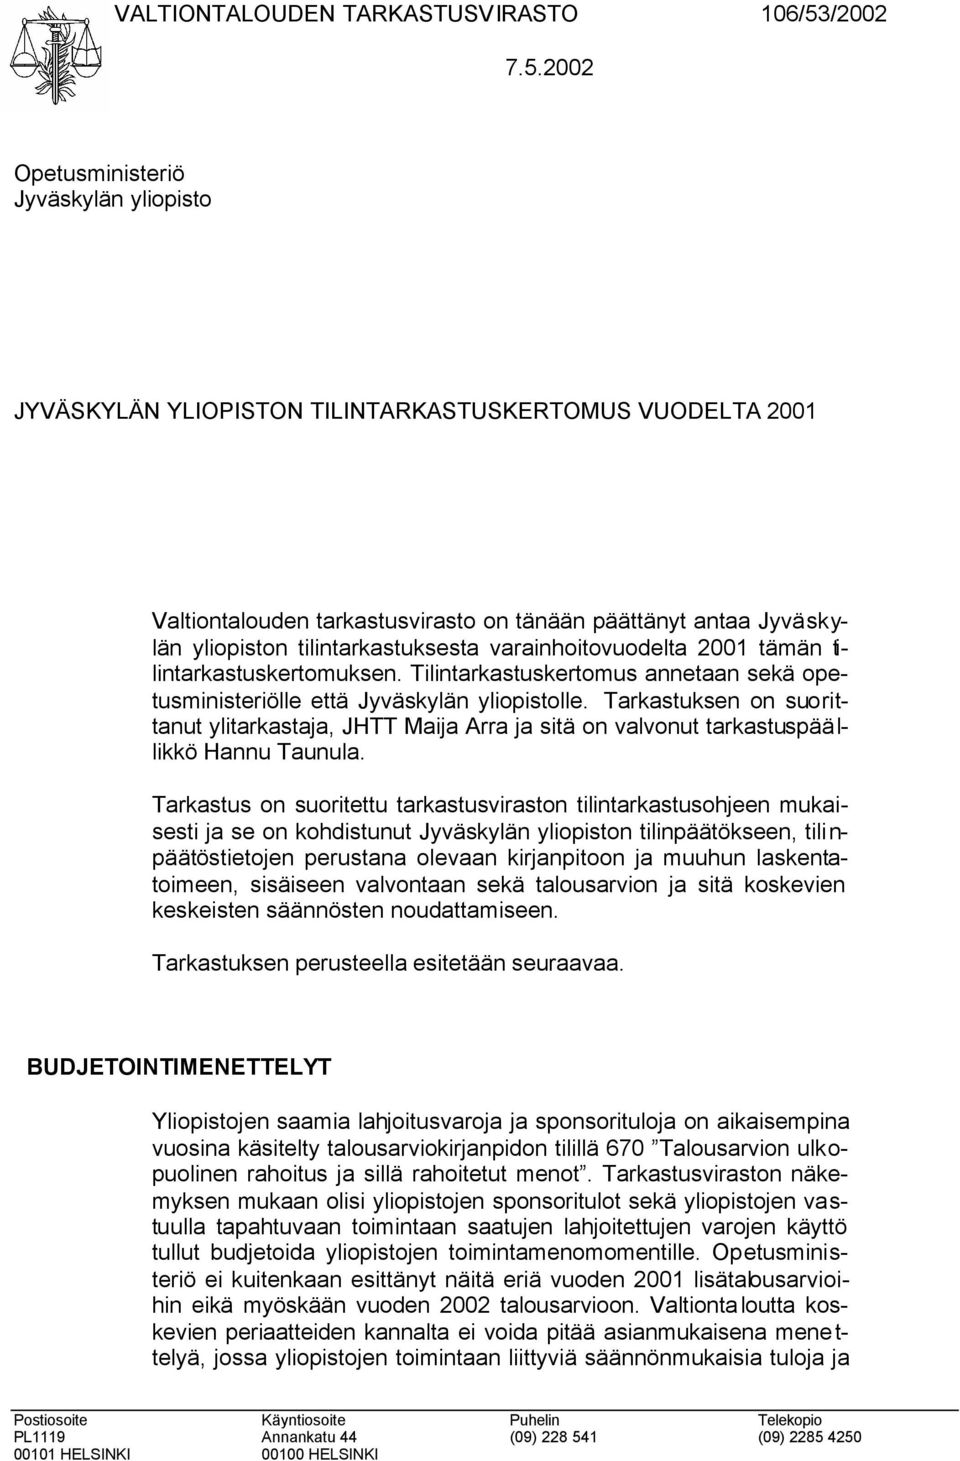 2002 Opetusministeriö Jyväskylän yliopisto JYVÄSKYLÄN YLIOPISTON TILINTARKASTUSKERTOMUS VUODELTA 2001 Valtiontalouden tarkastusvirasto on tänään päättänyt antaa Jyväskylän yliopiston